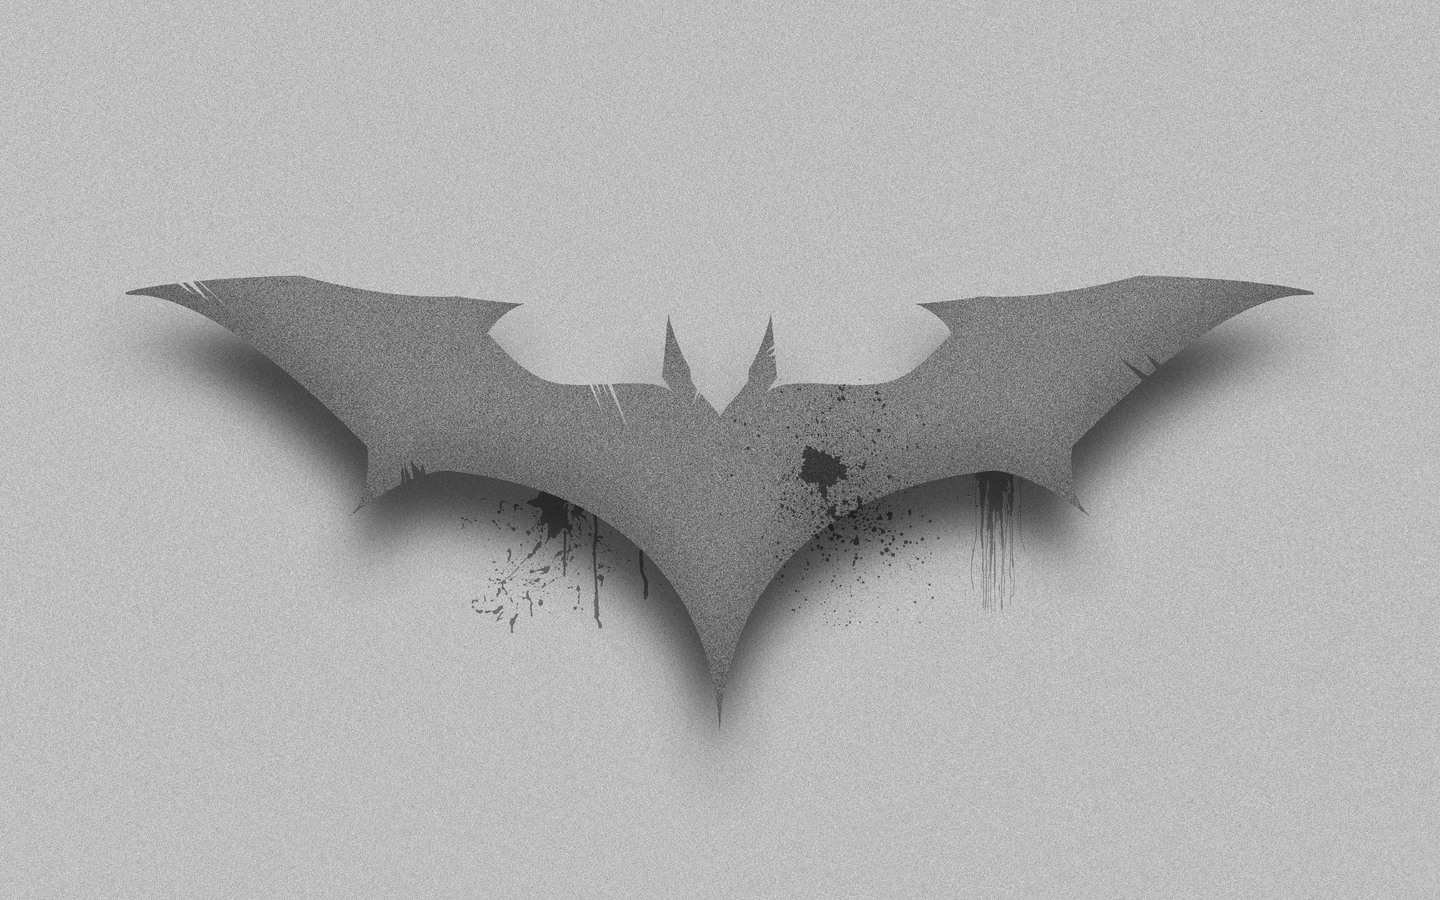 bat-logo-8k-x1.jpg